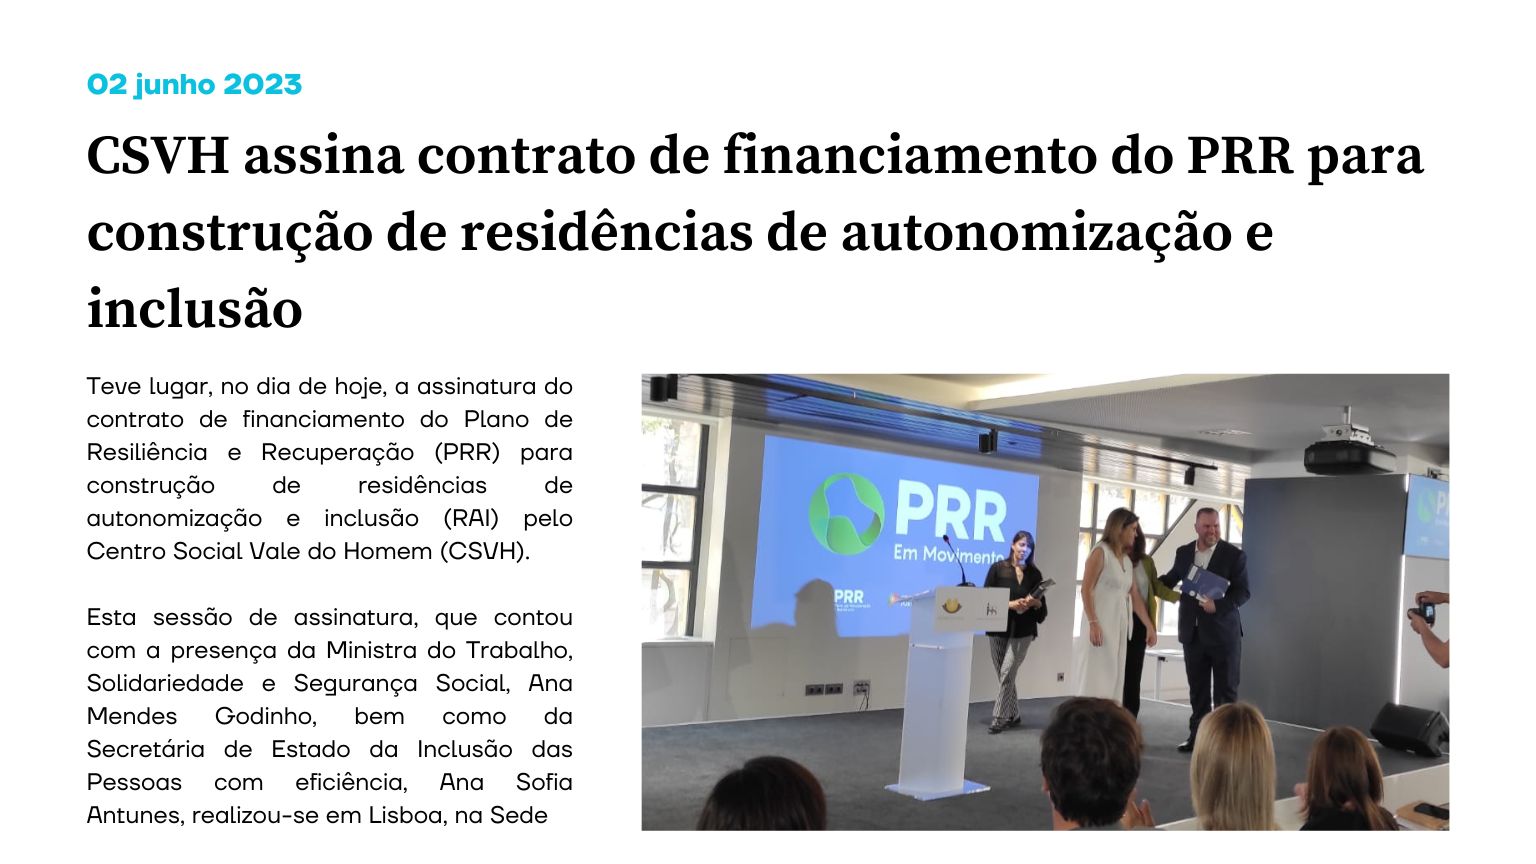 CSVH assina contrato de financiamento do PRR para construção de residências de autonomização e inclusão